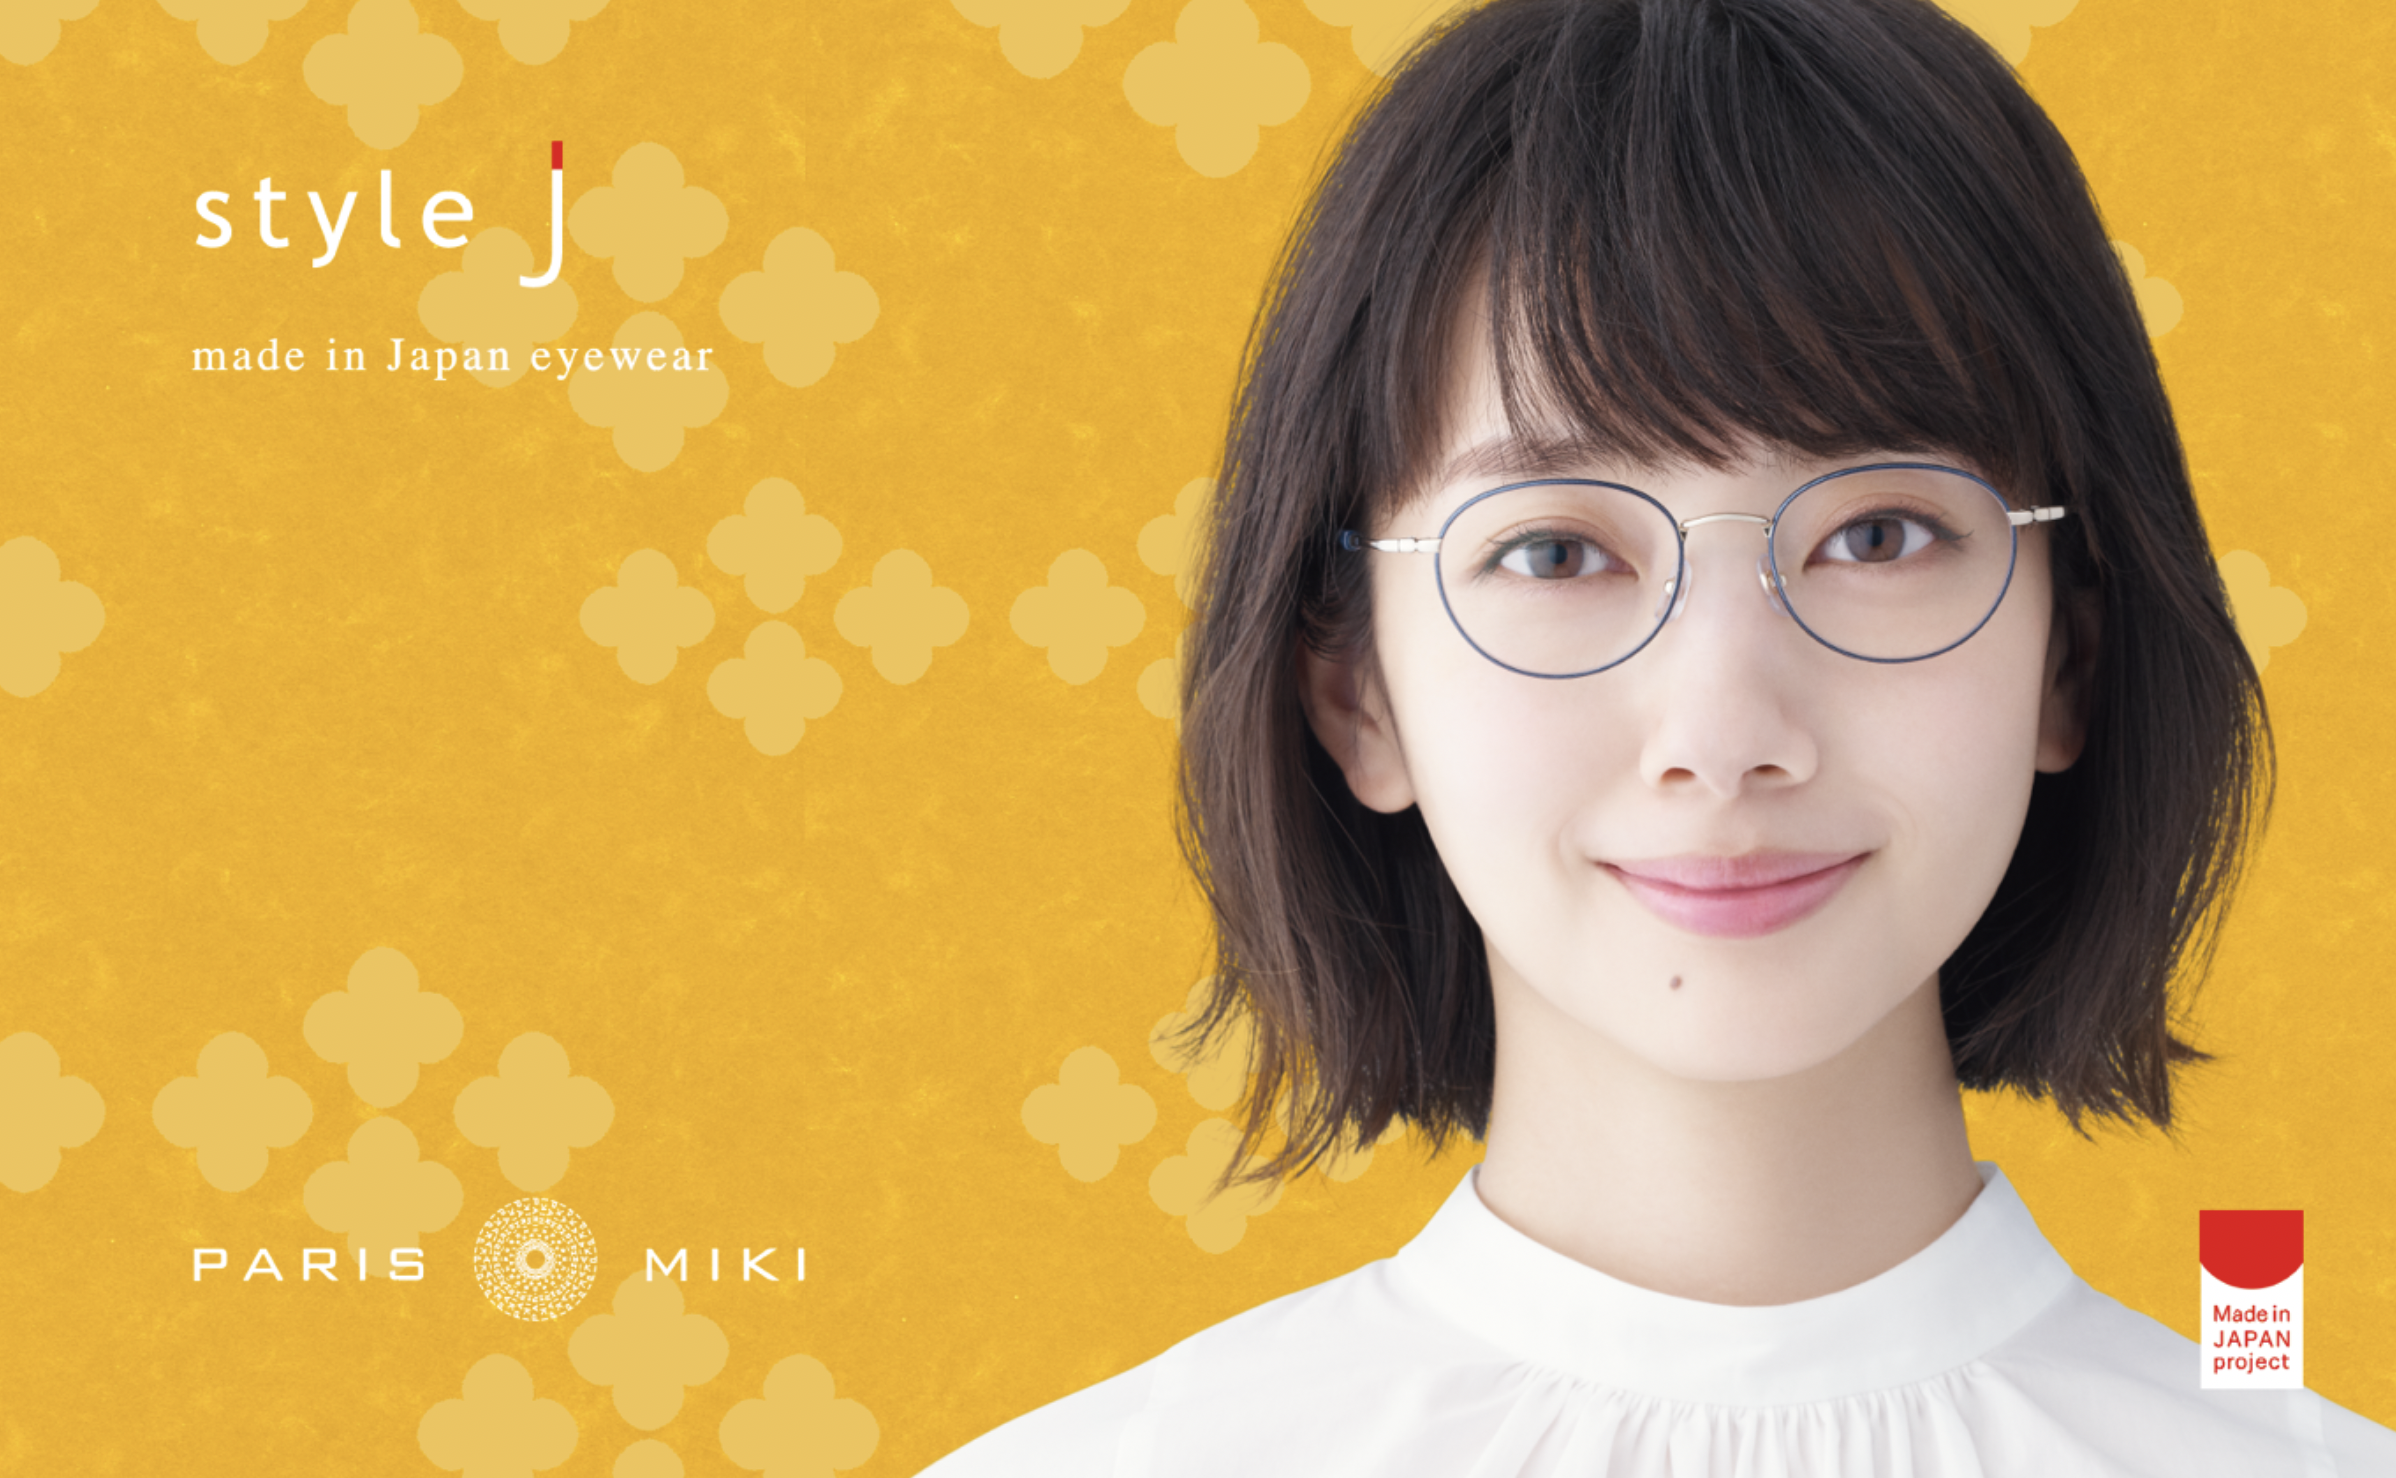 パリミキ「MADE IN JAPAN project」 イエナカ生活にも快適なメガネ